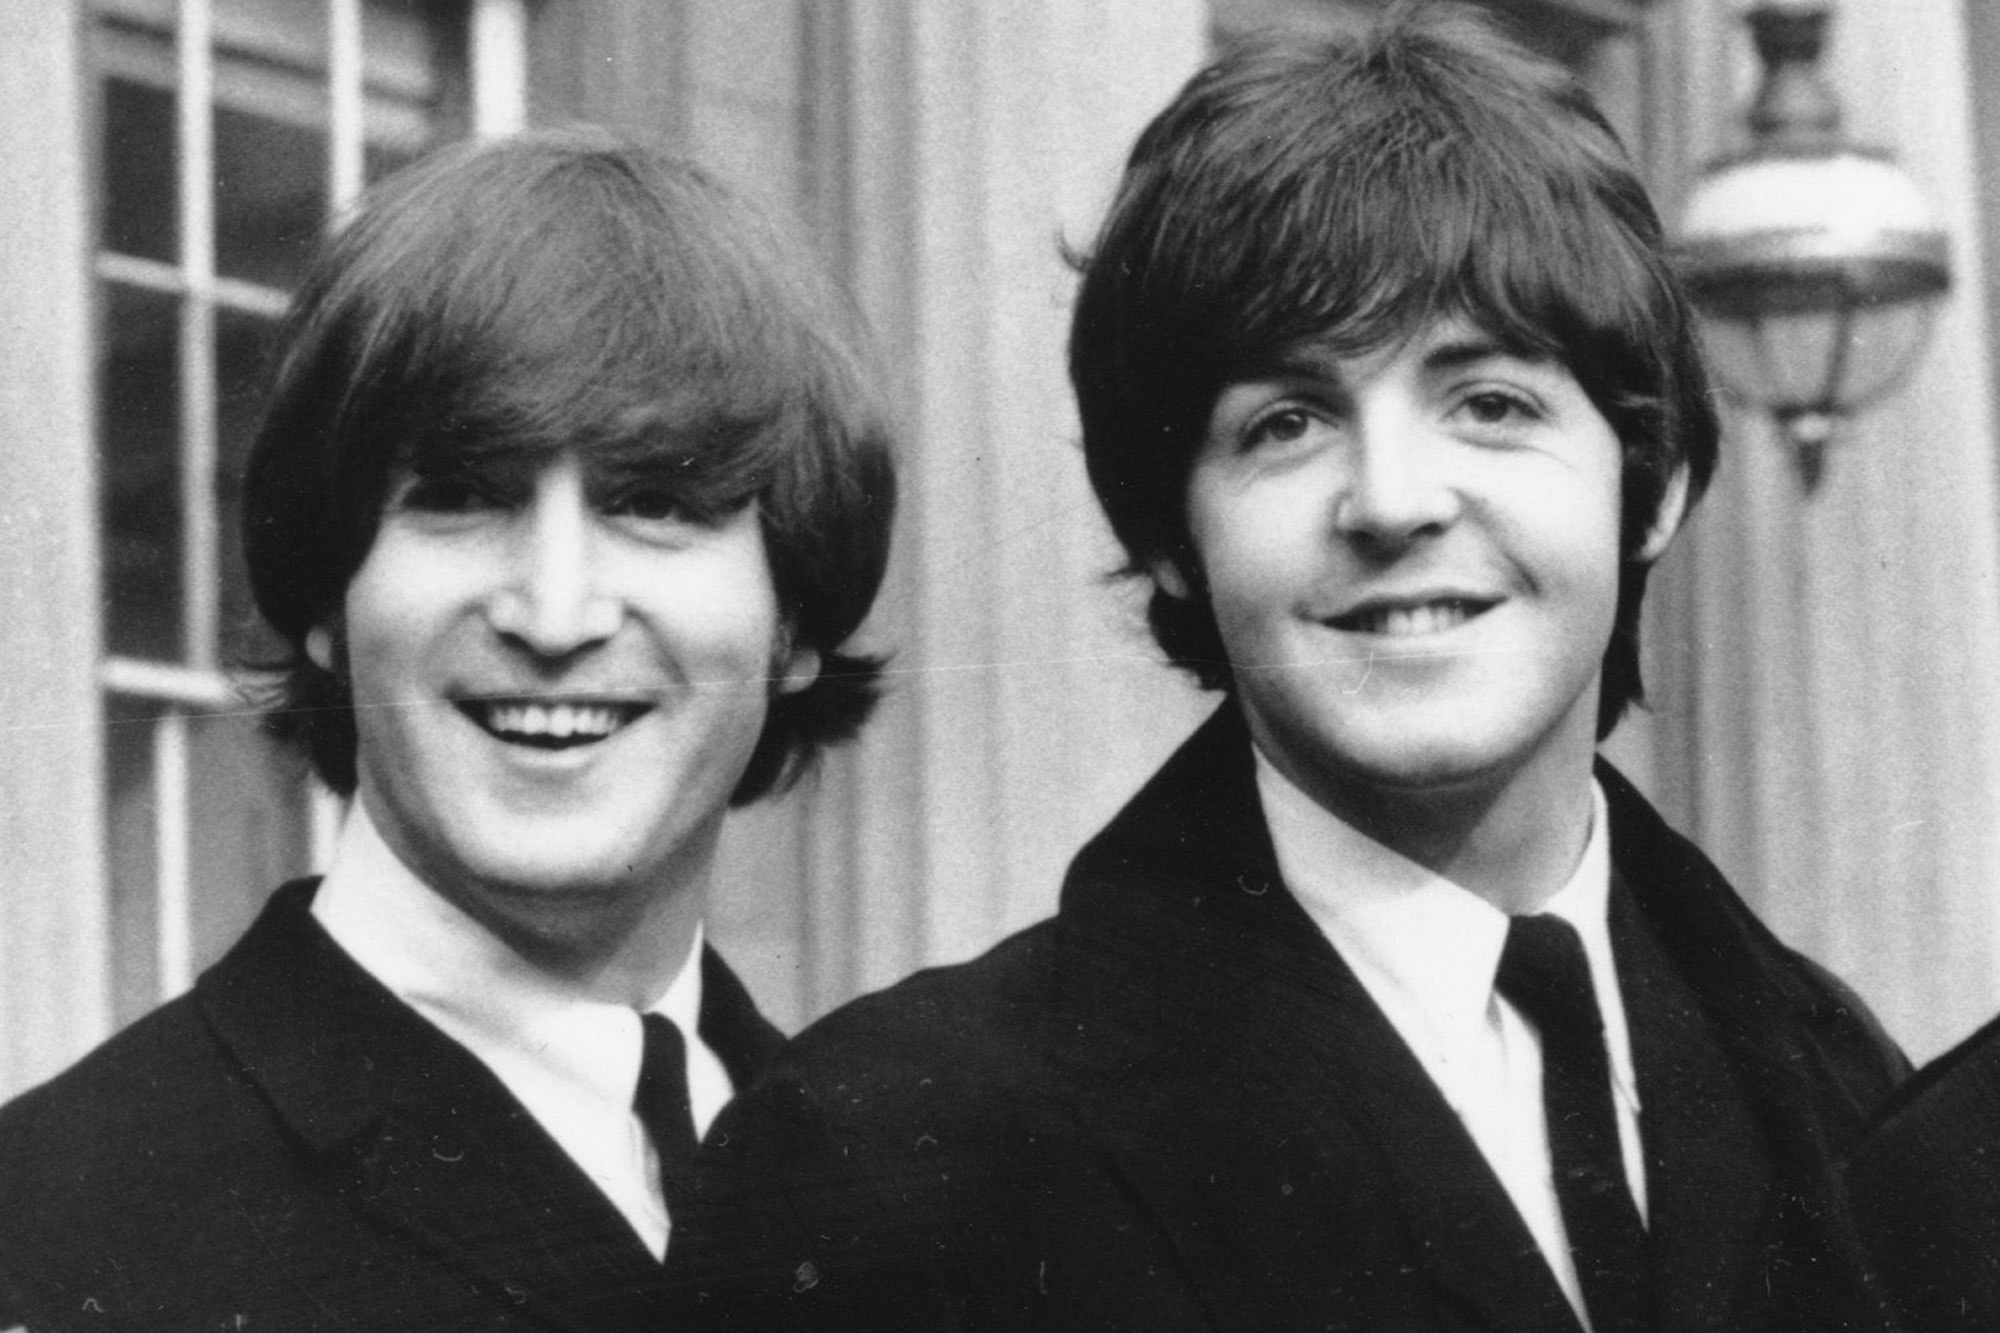 La confession très surprenante de Paul McCartney sur John Lennon !